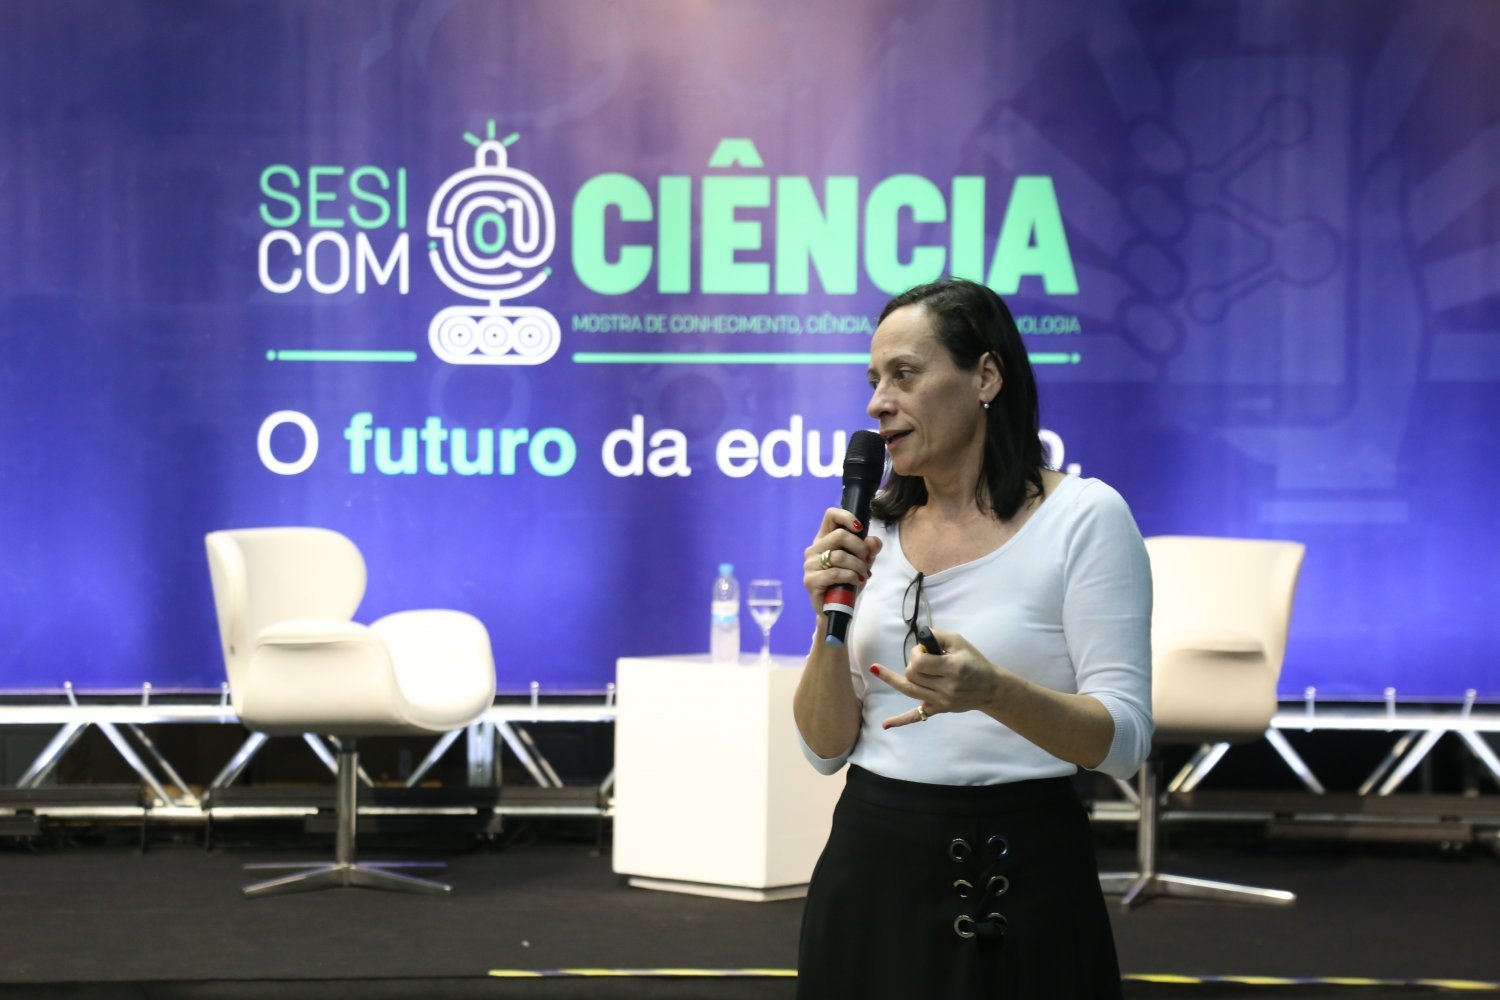 Sesi com@Ciência - Debora Conforto